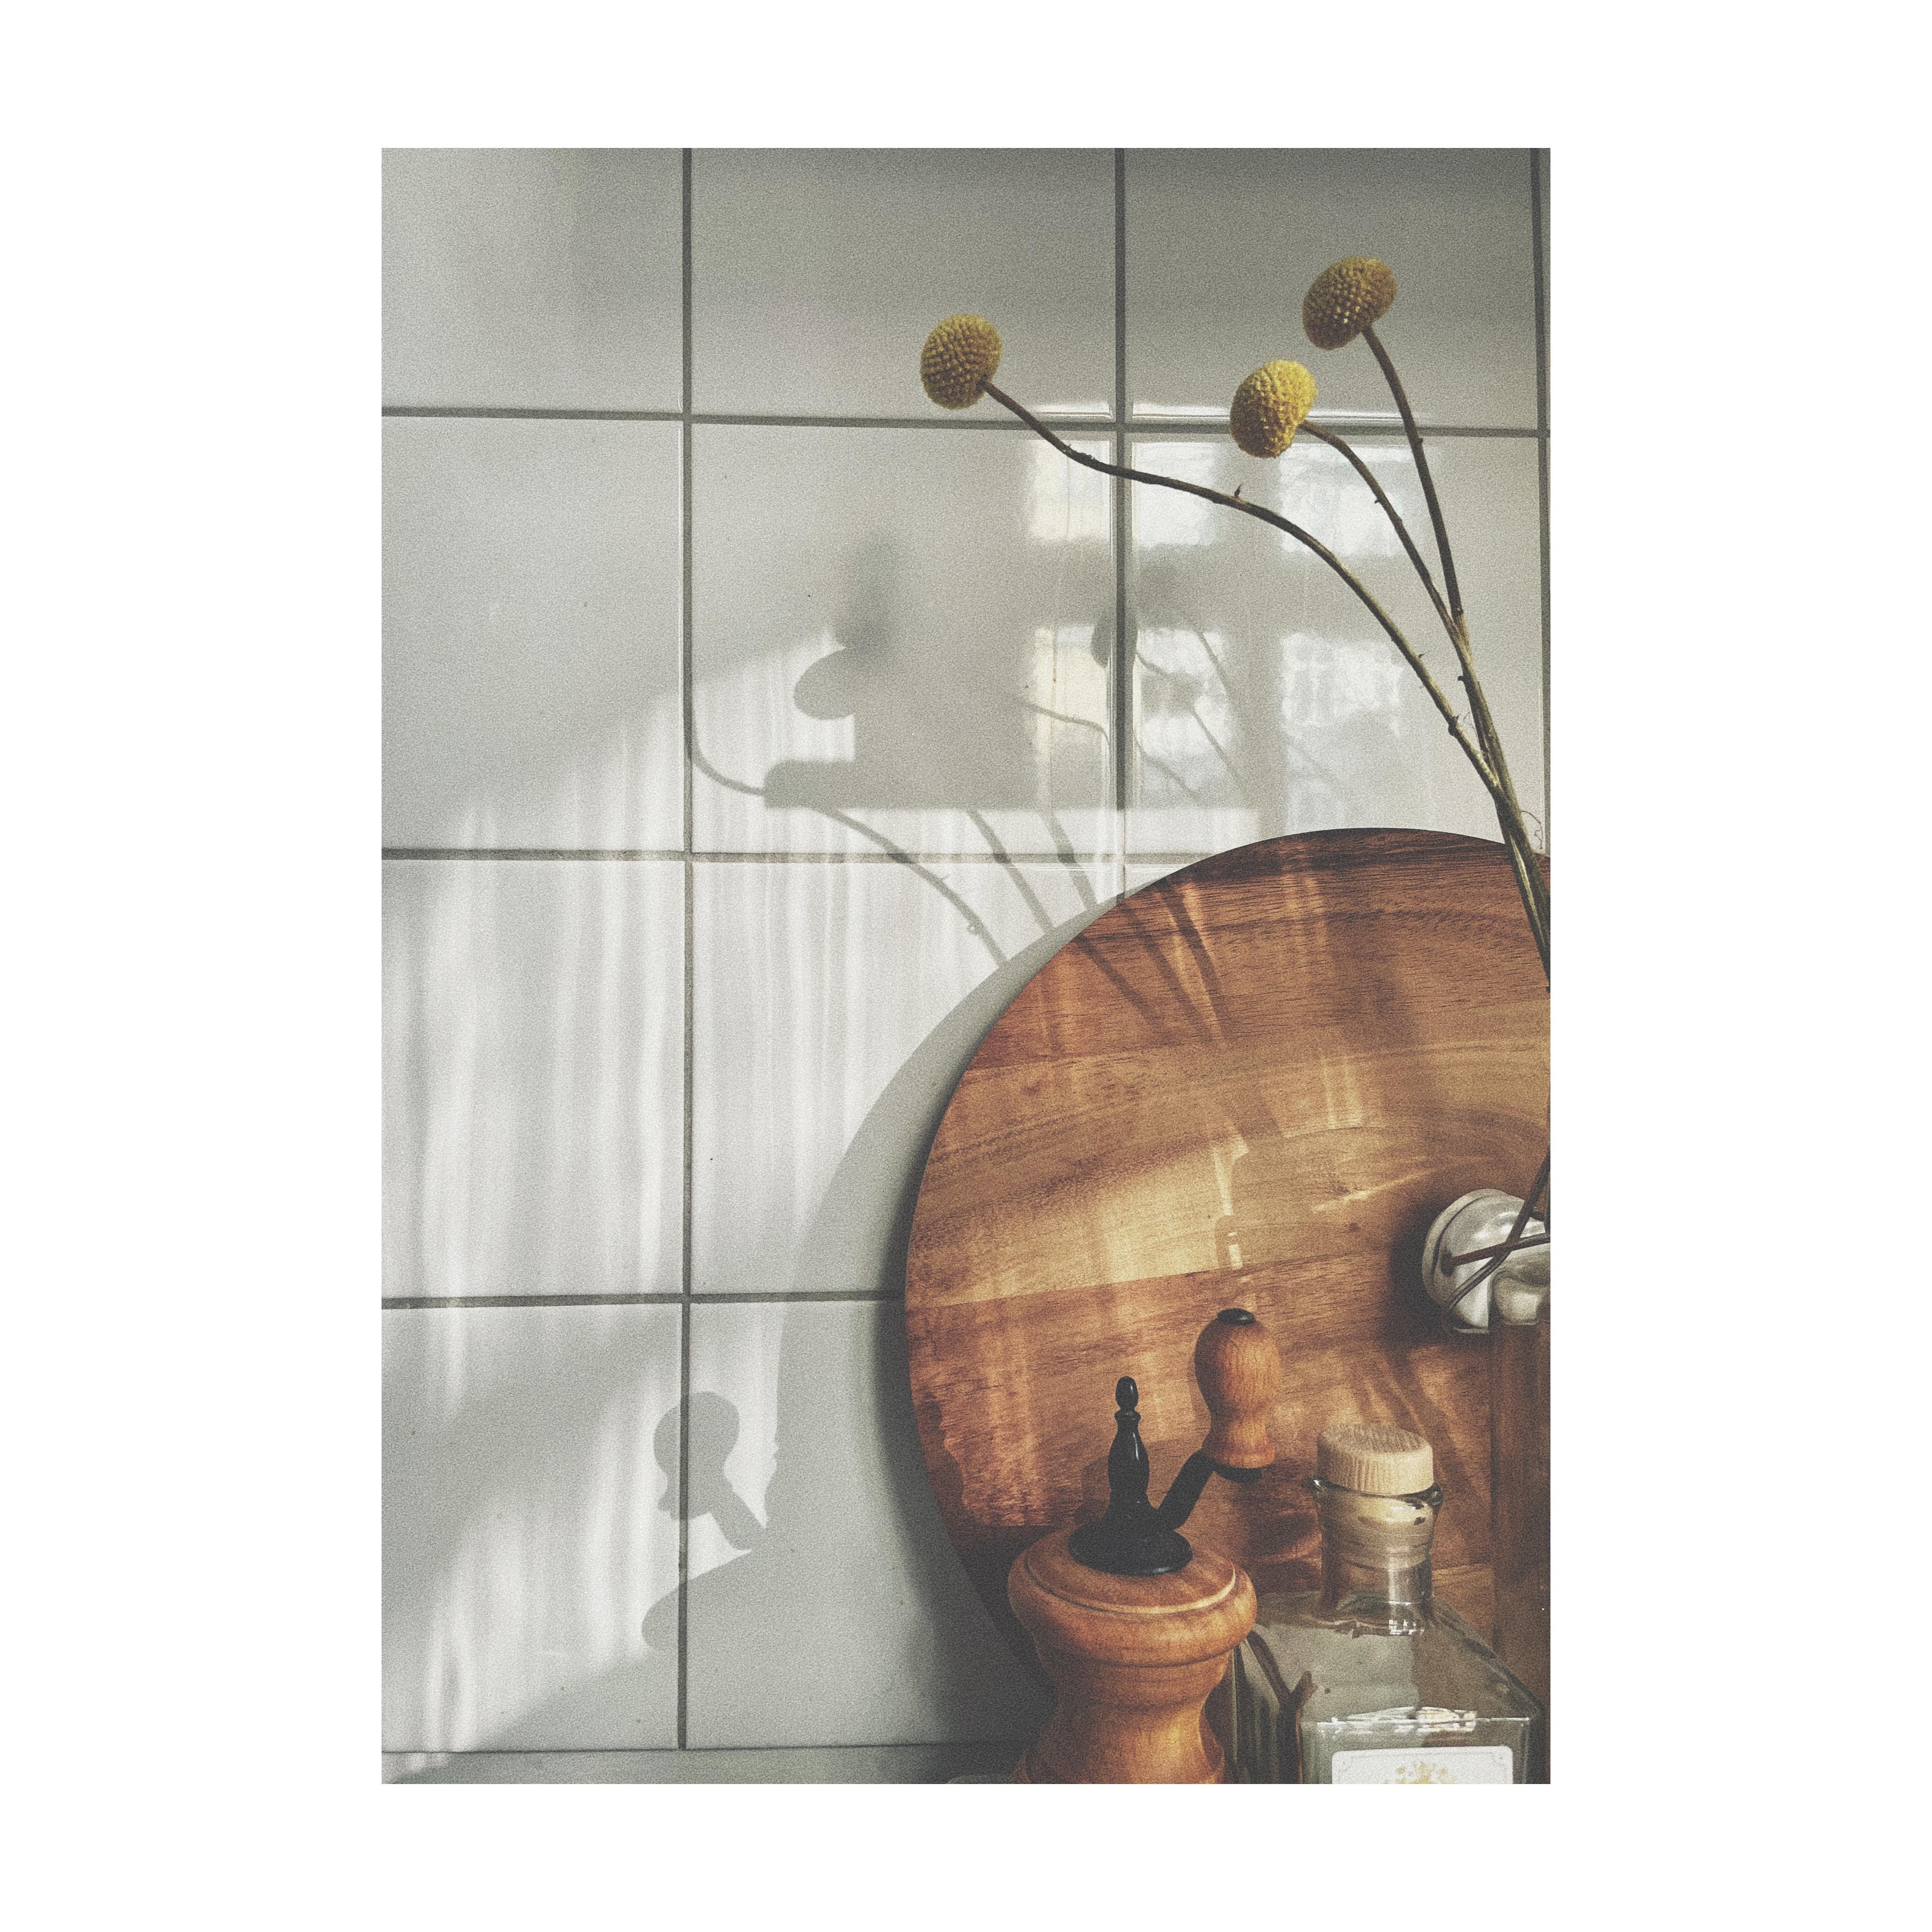 lichtspiel in der küche
#tinykitchen #woodendetails #interior #tinyliving #42qm #berlin